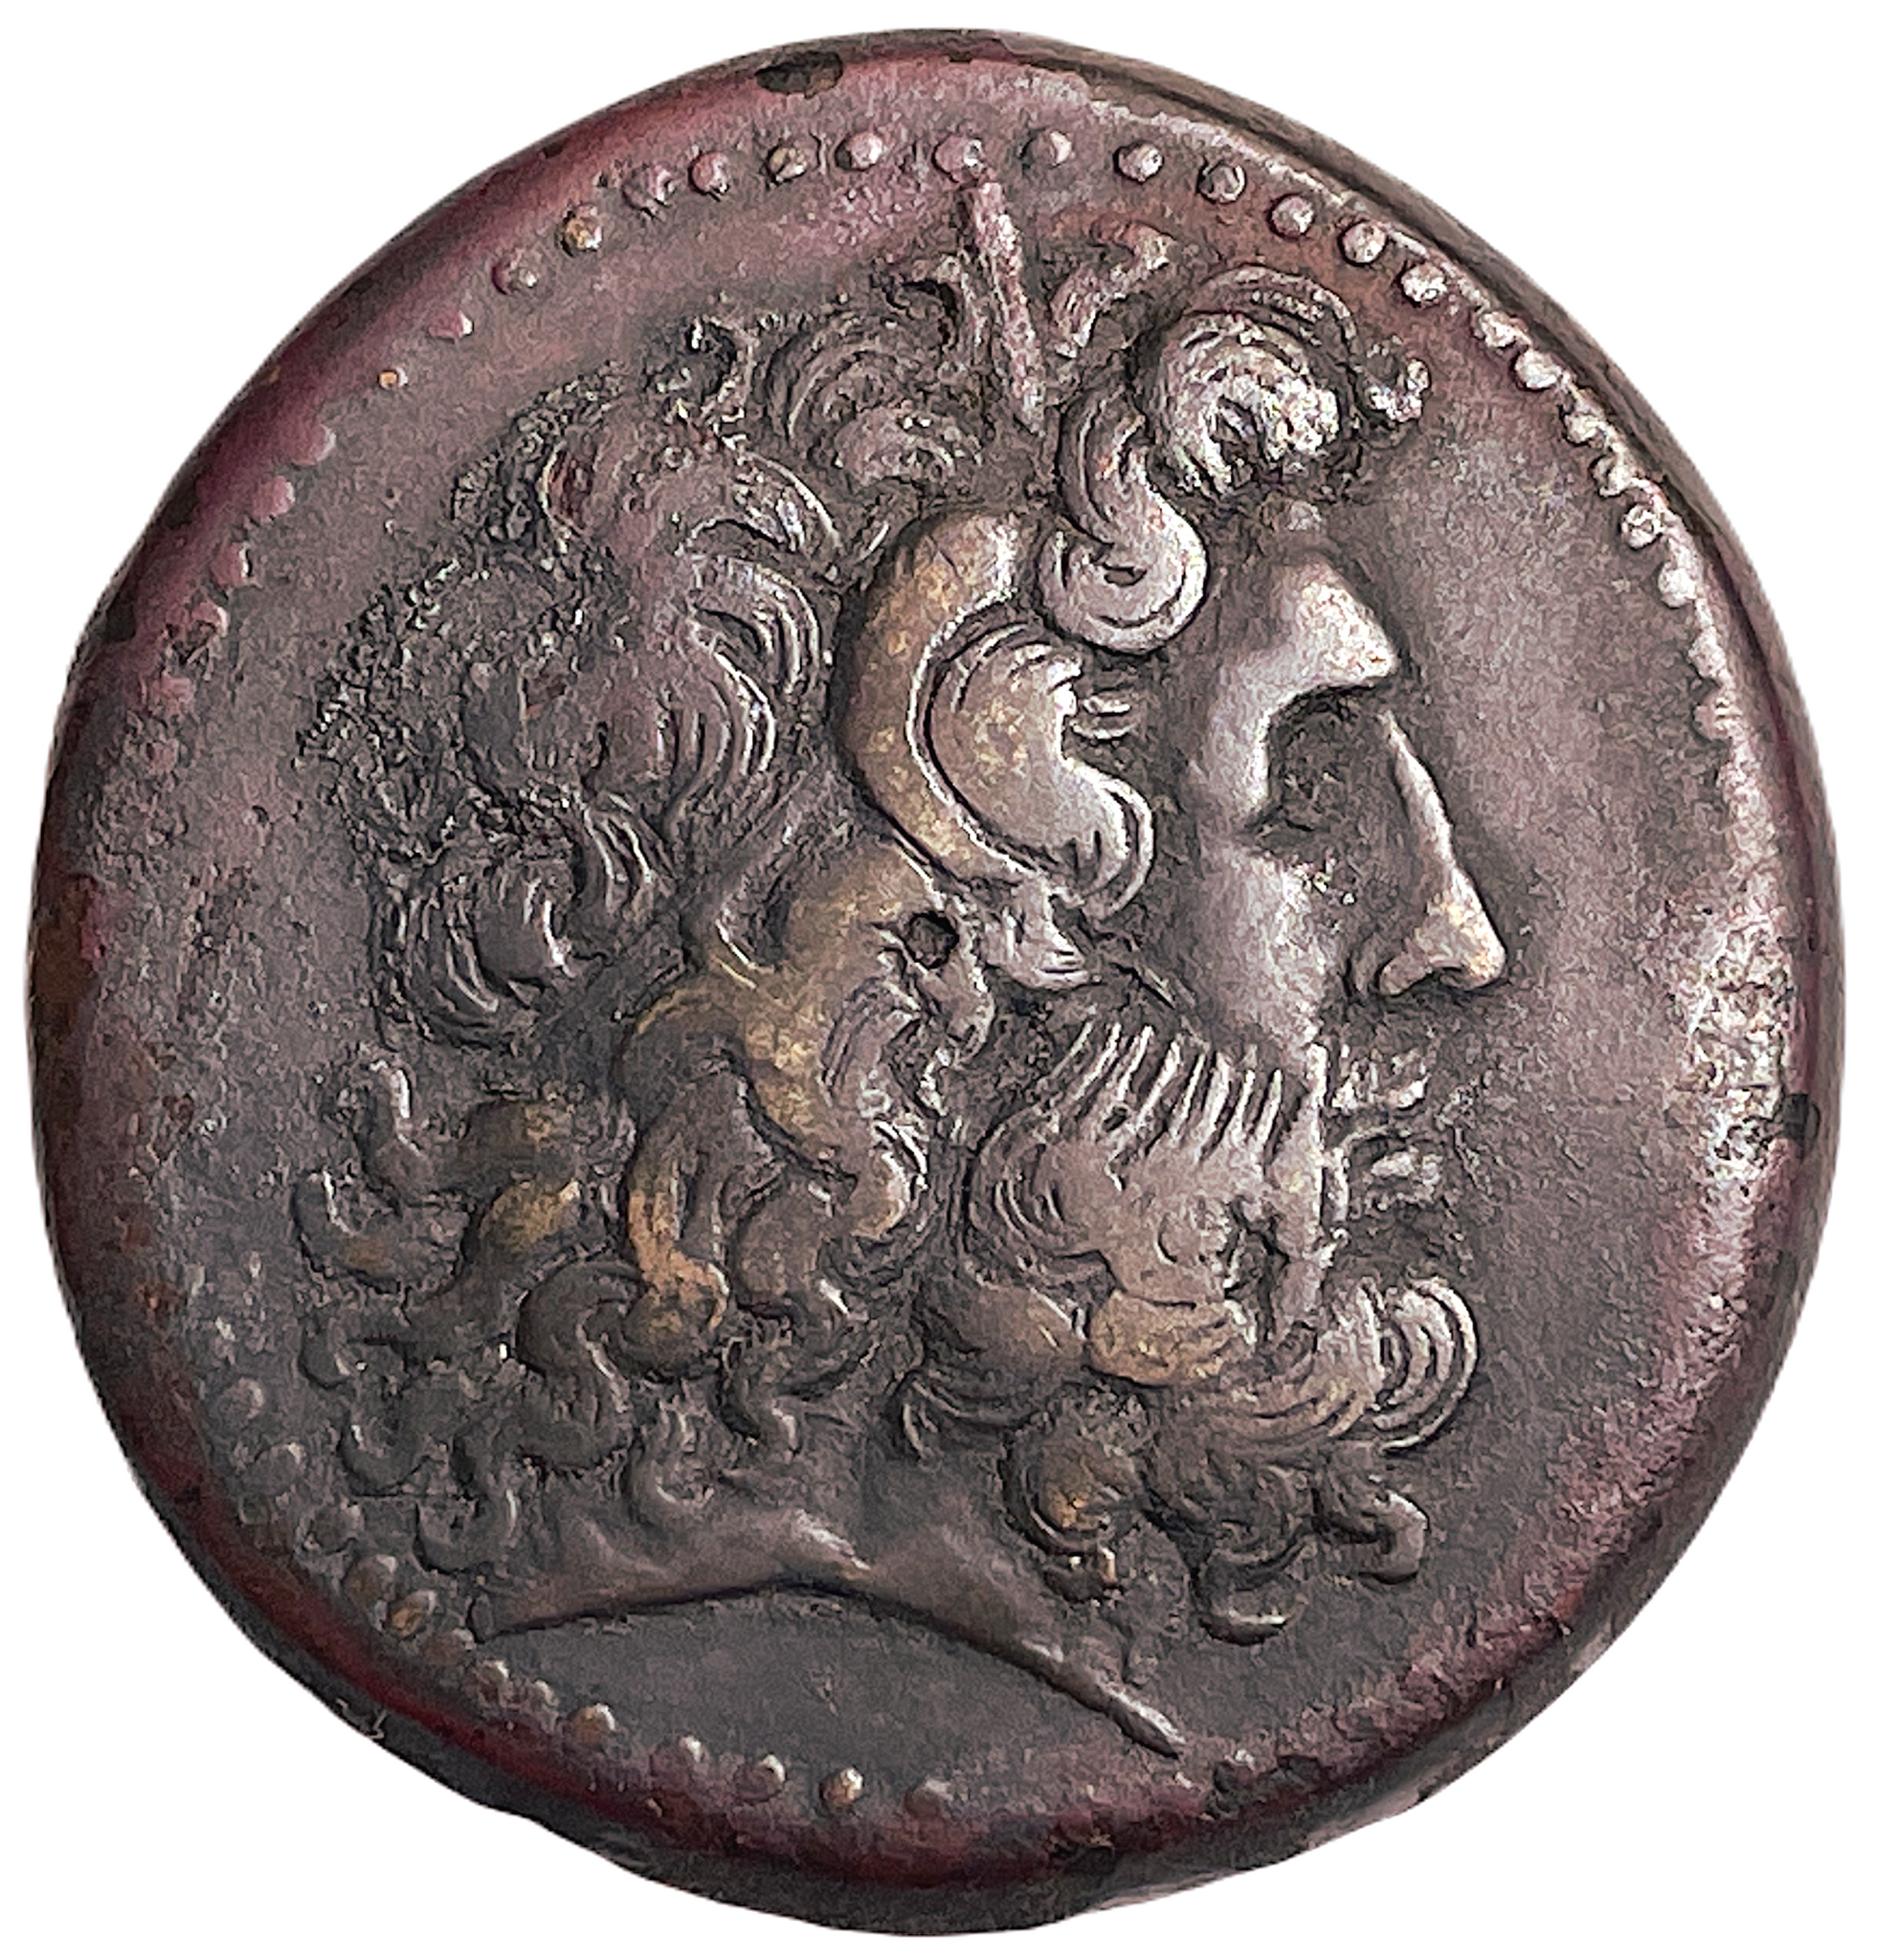 Det Ptolemaiska kungariket. Ptolemaios III (246-222 f.Kr.). Bronsmynt, 42 mm - Ett härligt stort mynt från faraonernas land Egypten